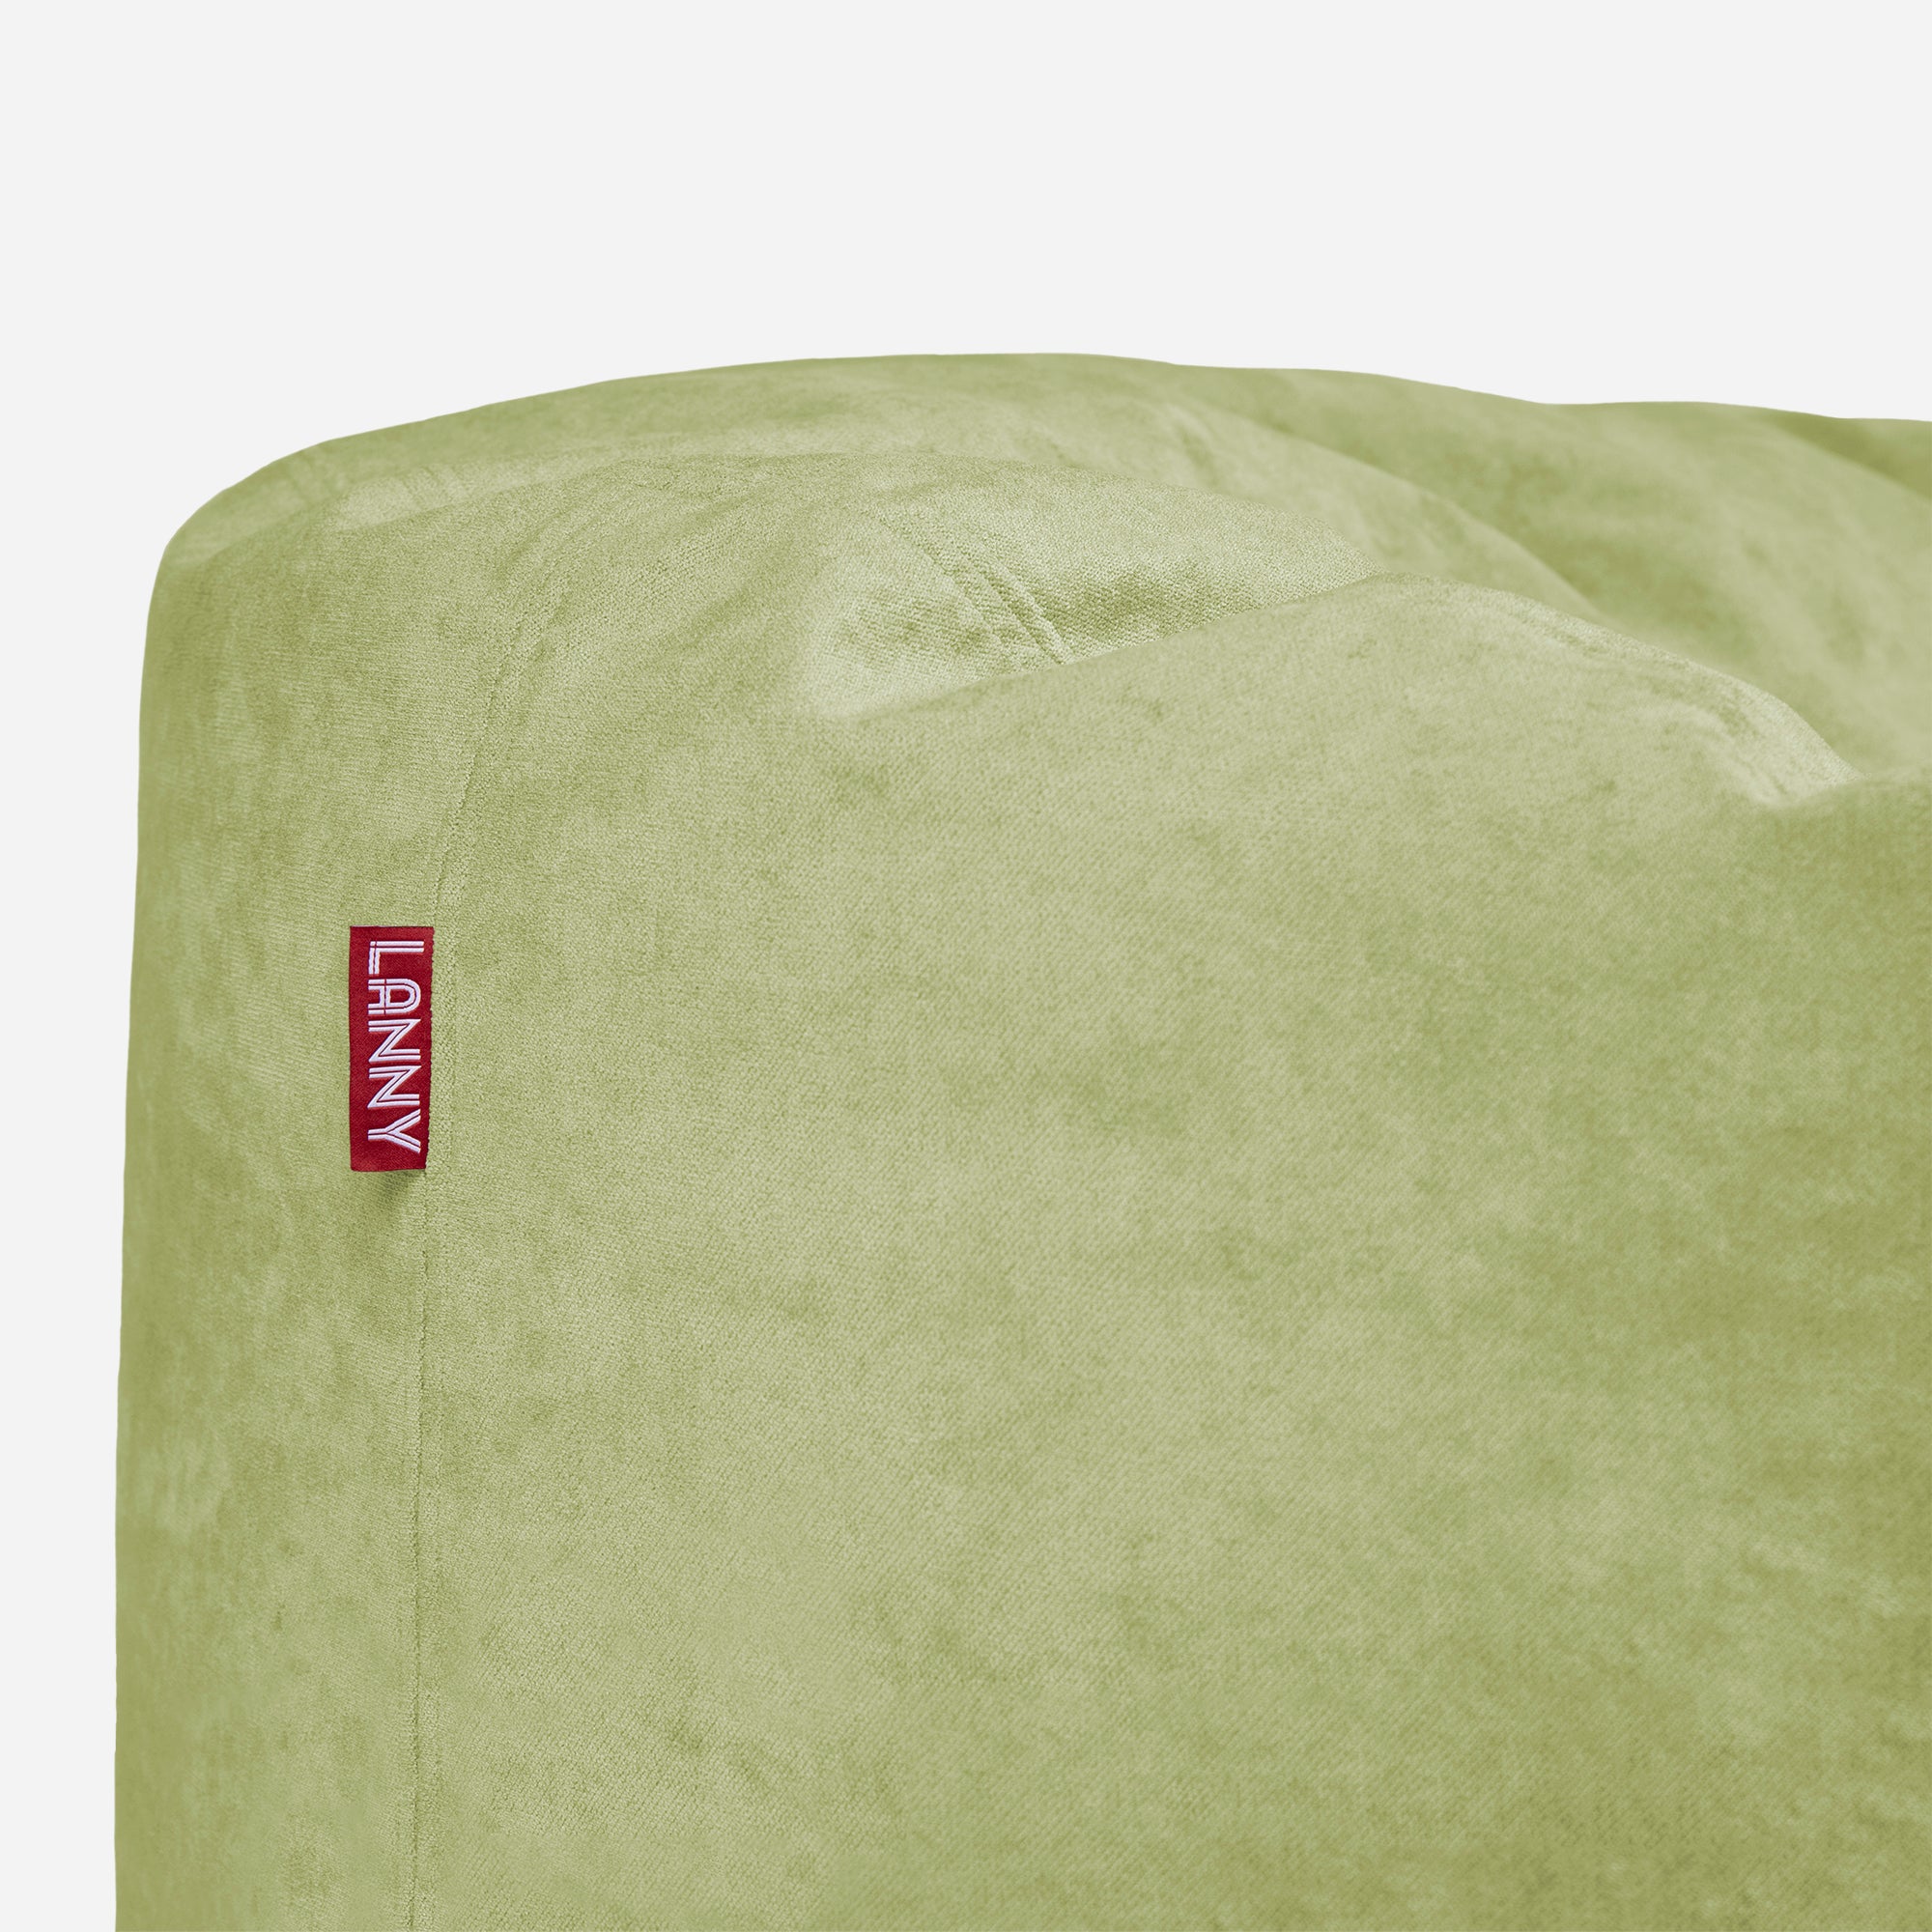 Medium Original Aldo Lime Bean Bag